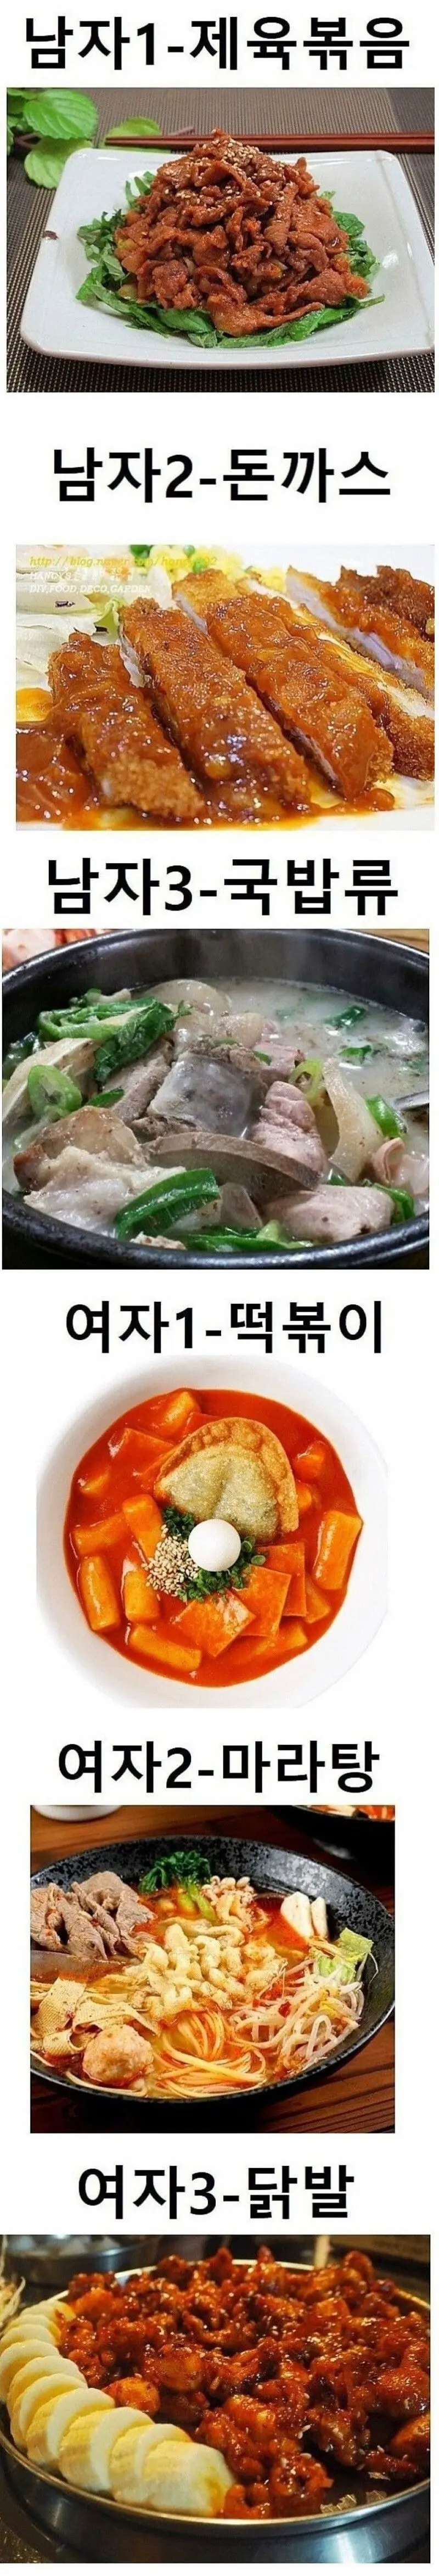 남녀별 선호 음식 3가지 | mbong.kr 엠봉